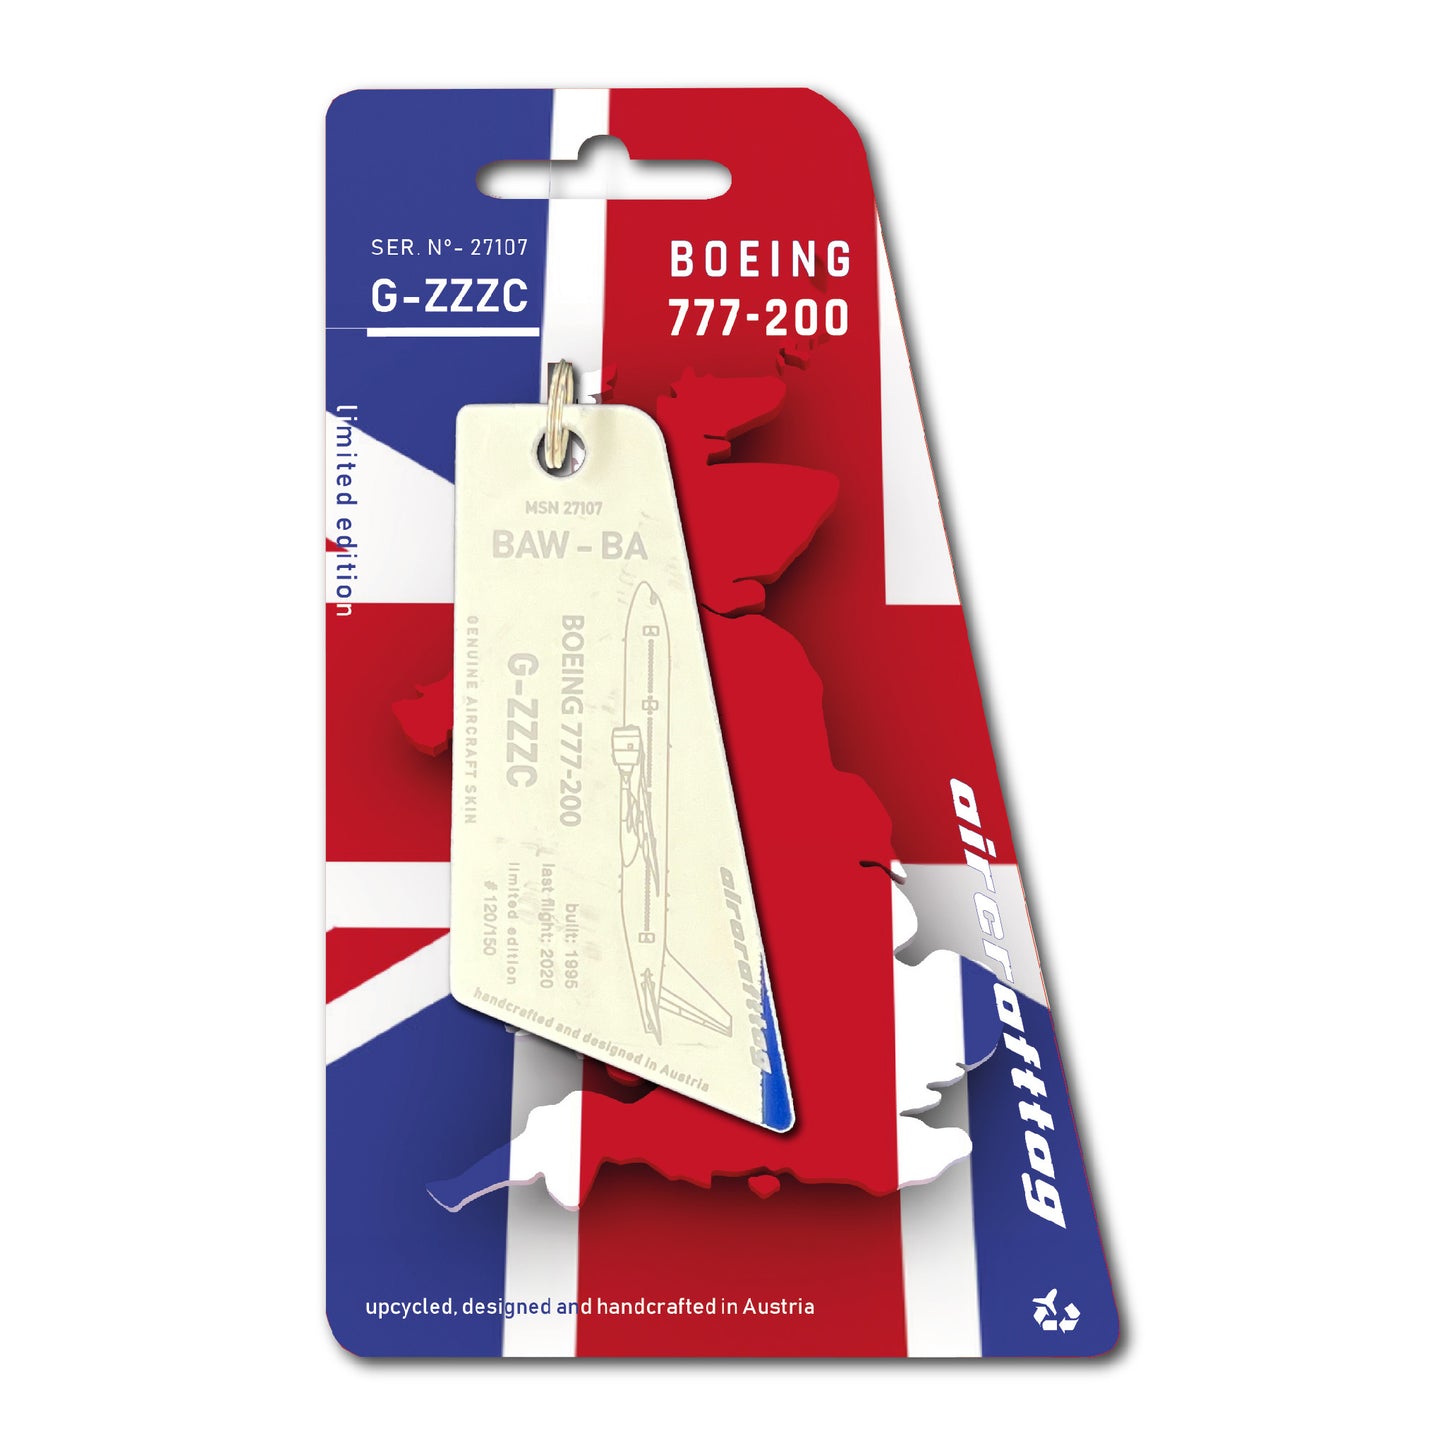 Boeing 777-200 - British Airways - G-ZZZC